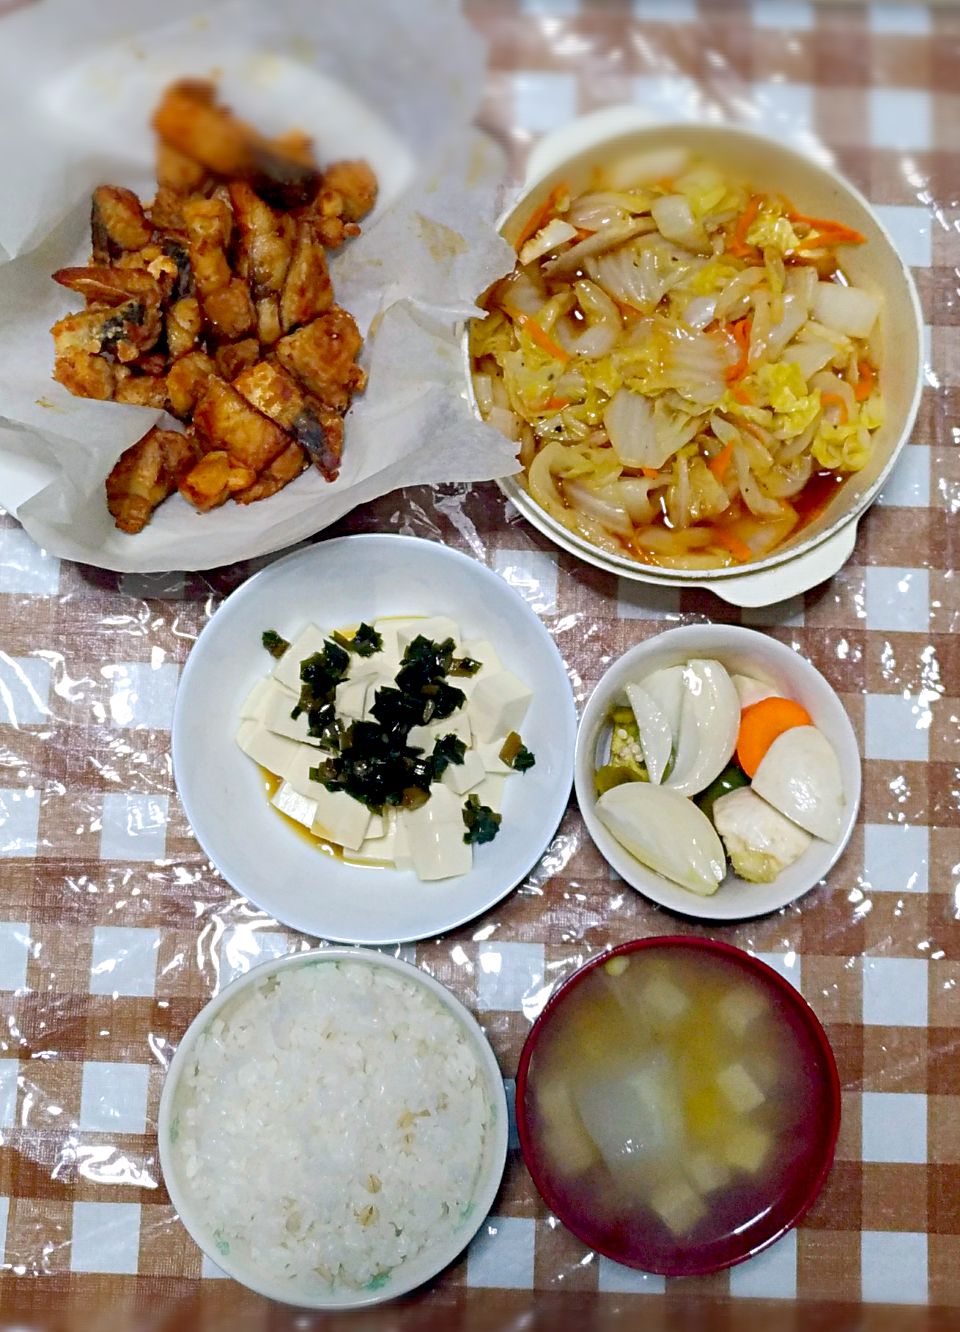 サバの竜田上げ
野菜ピクルス
白菜ナムル
豆腐の万能韮掛け
豆腐とコーンスープ